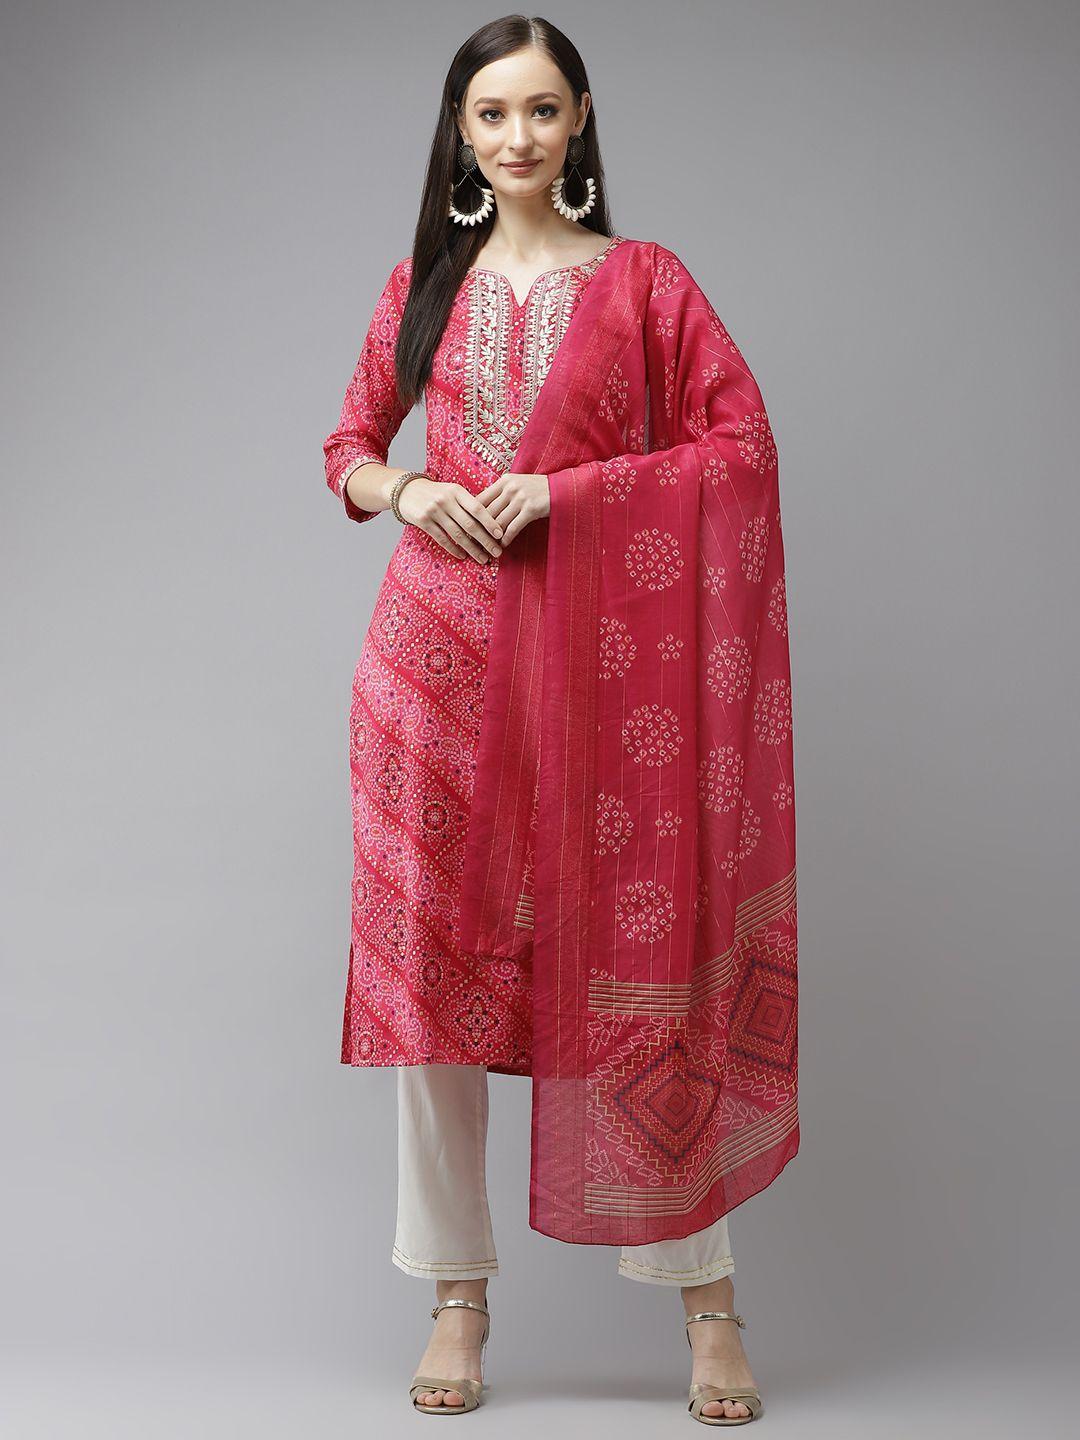 yufta-women-pink-bandhani-printed-panelled-gotta-patti-kurta-with-palazzos-&-with-dupatta